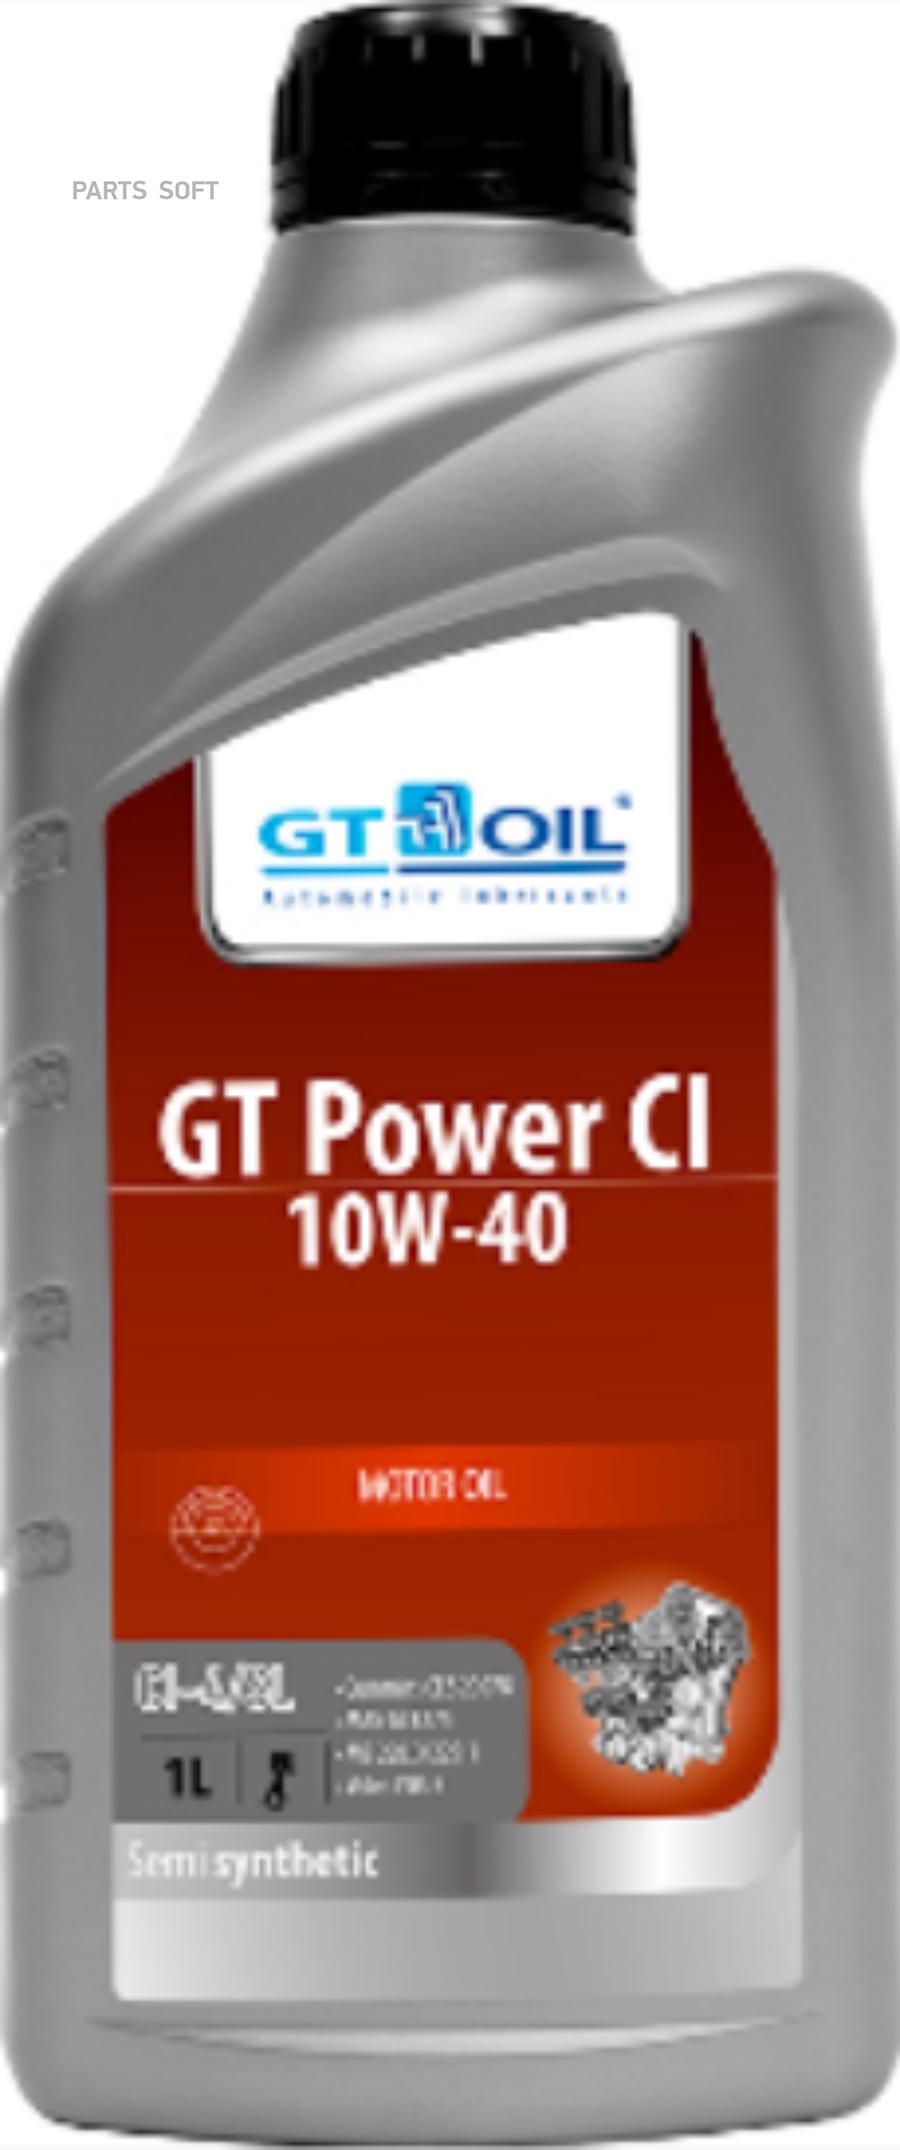 GT Oil GT POWER CI 10W-40 10W-40 .